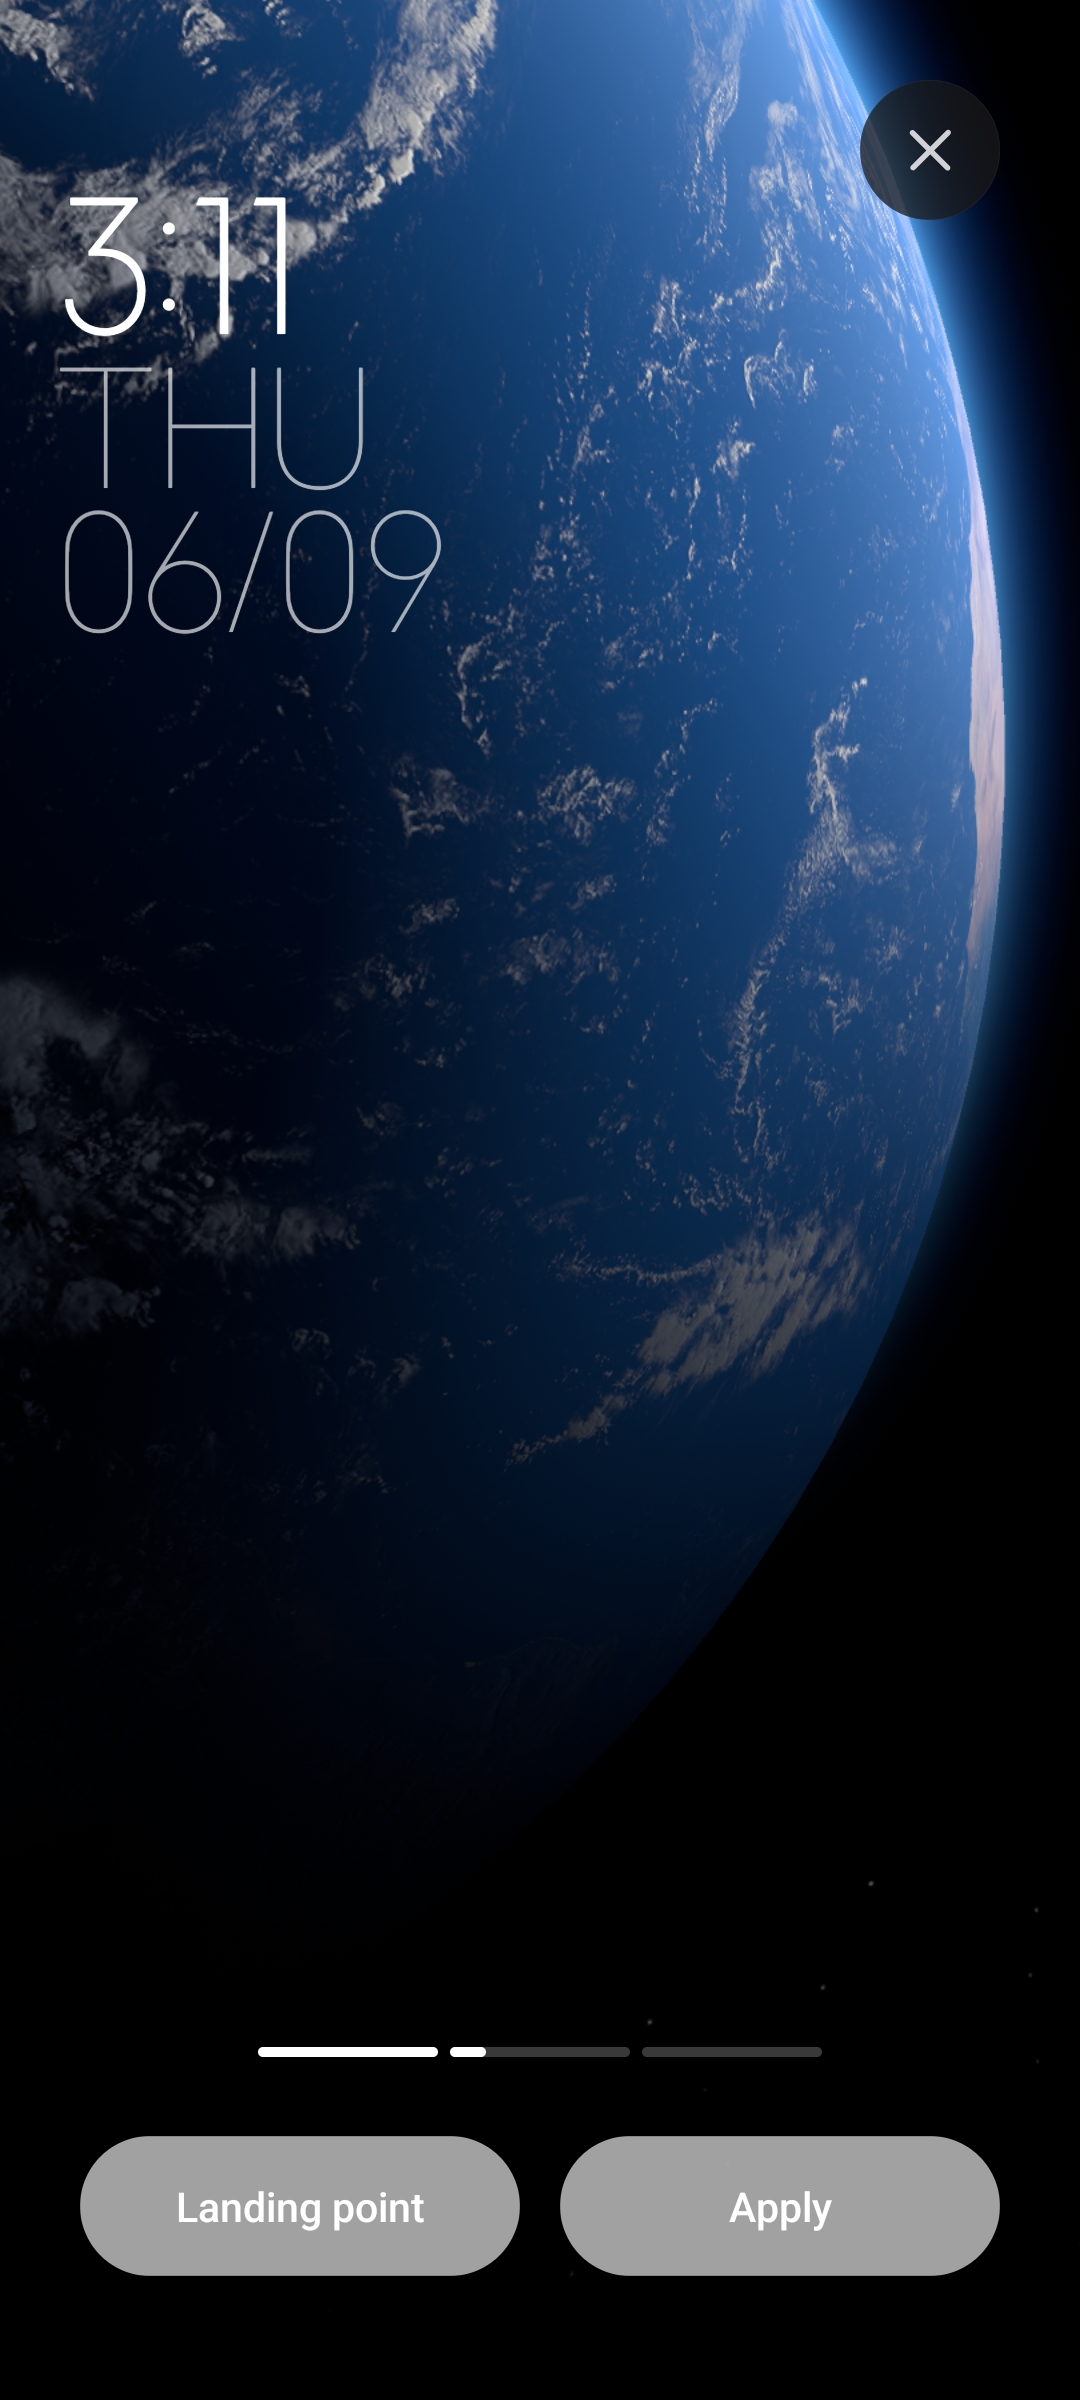 Với hình ảnh tuyệt đẹp, bạn sẽ được ngắm nhìn vẻ đẹp của hành tinh xanh lác đác ánh sáng từ không gian. Hãy cho máy của bạn một phong cách mới, bắt đầu với hình nền trái đất MIUI